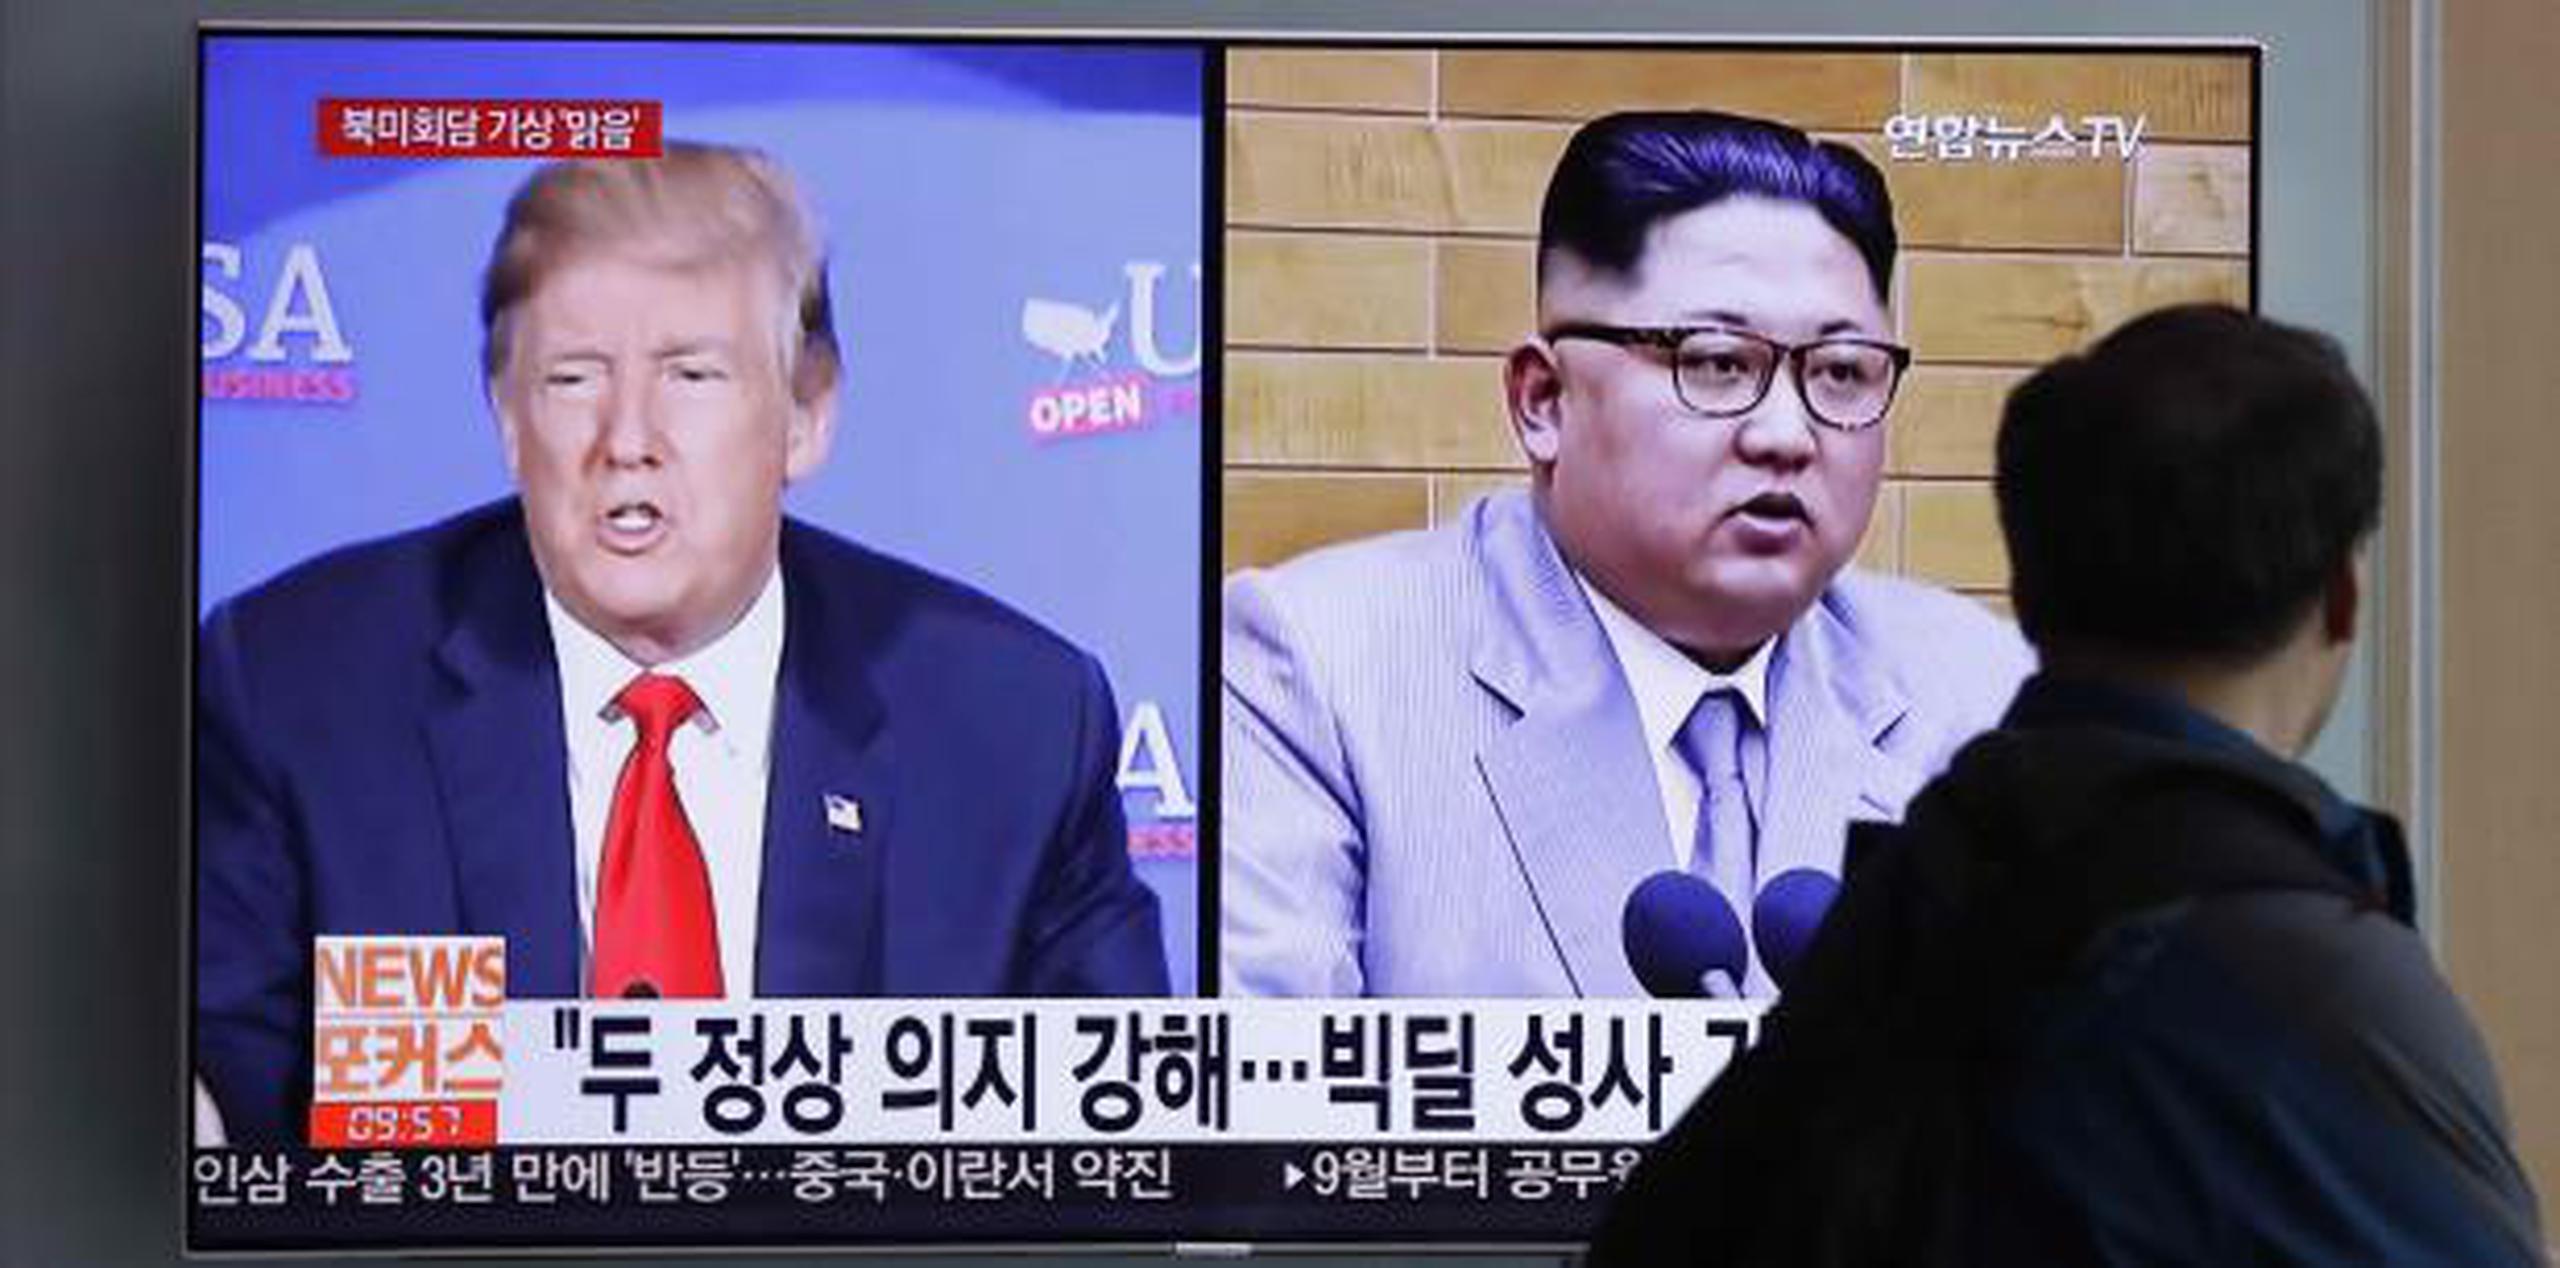 Pyongyang dijo que planea invitar a periodistas de Estados Unidos, Corea del Sur, China, Rusia y Gran Bretaña a inspeccionar el proceso. (AP / Lee Jin-man)